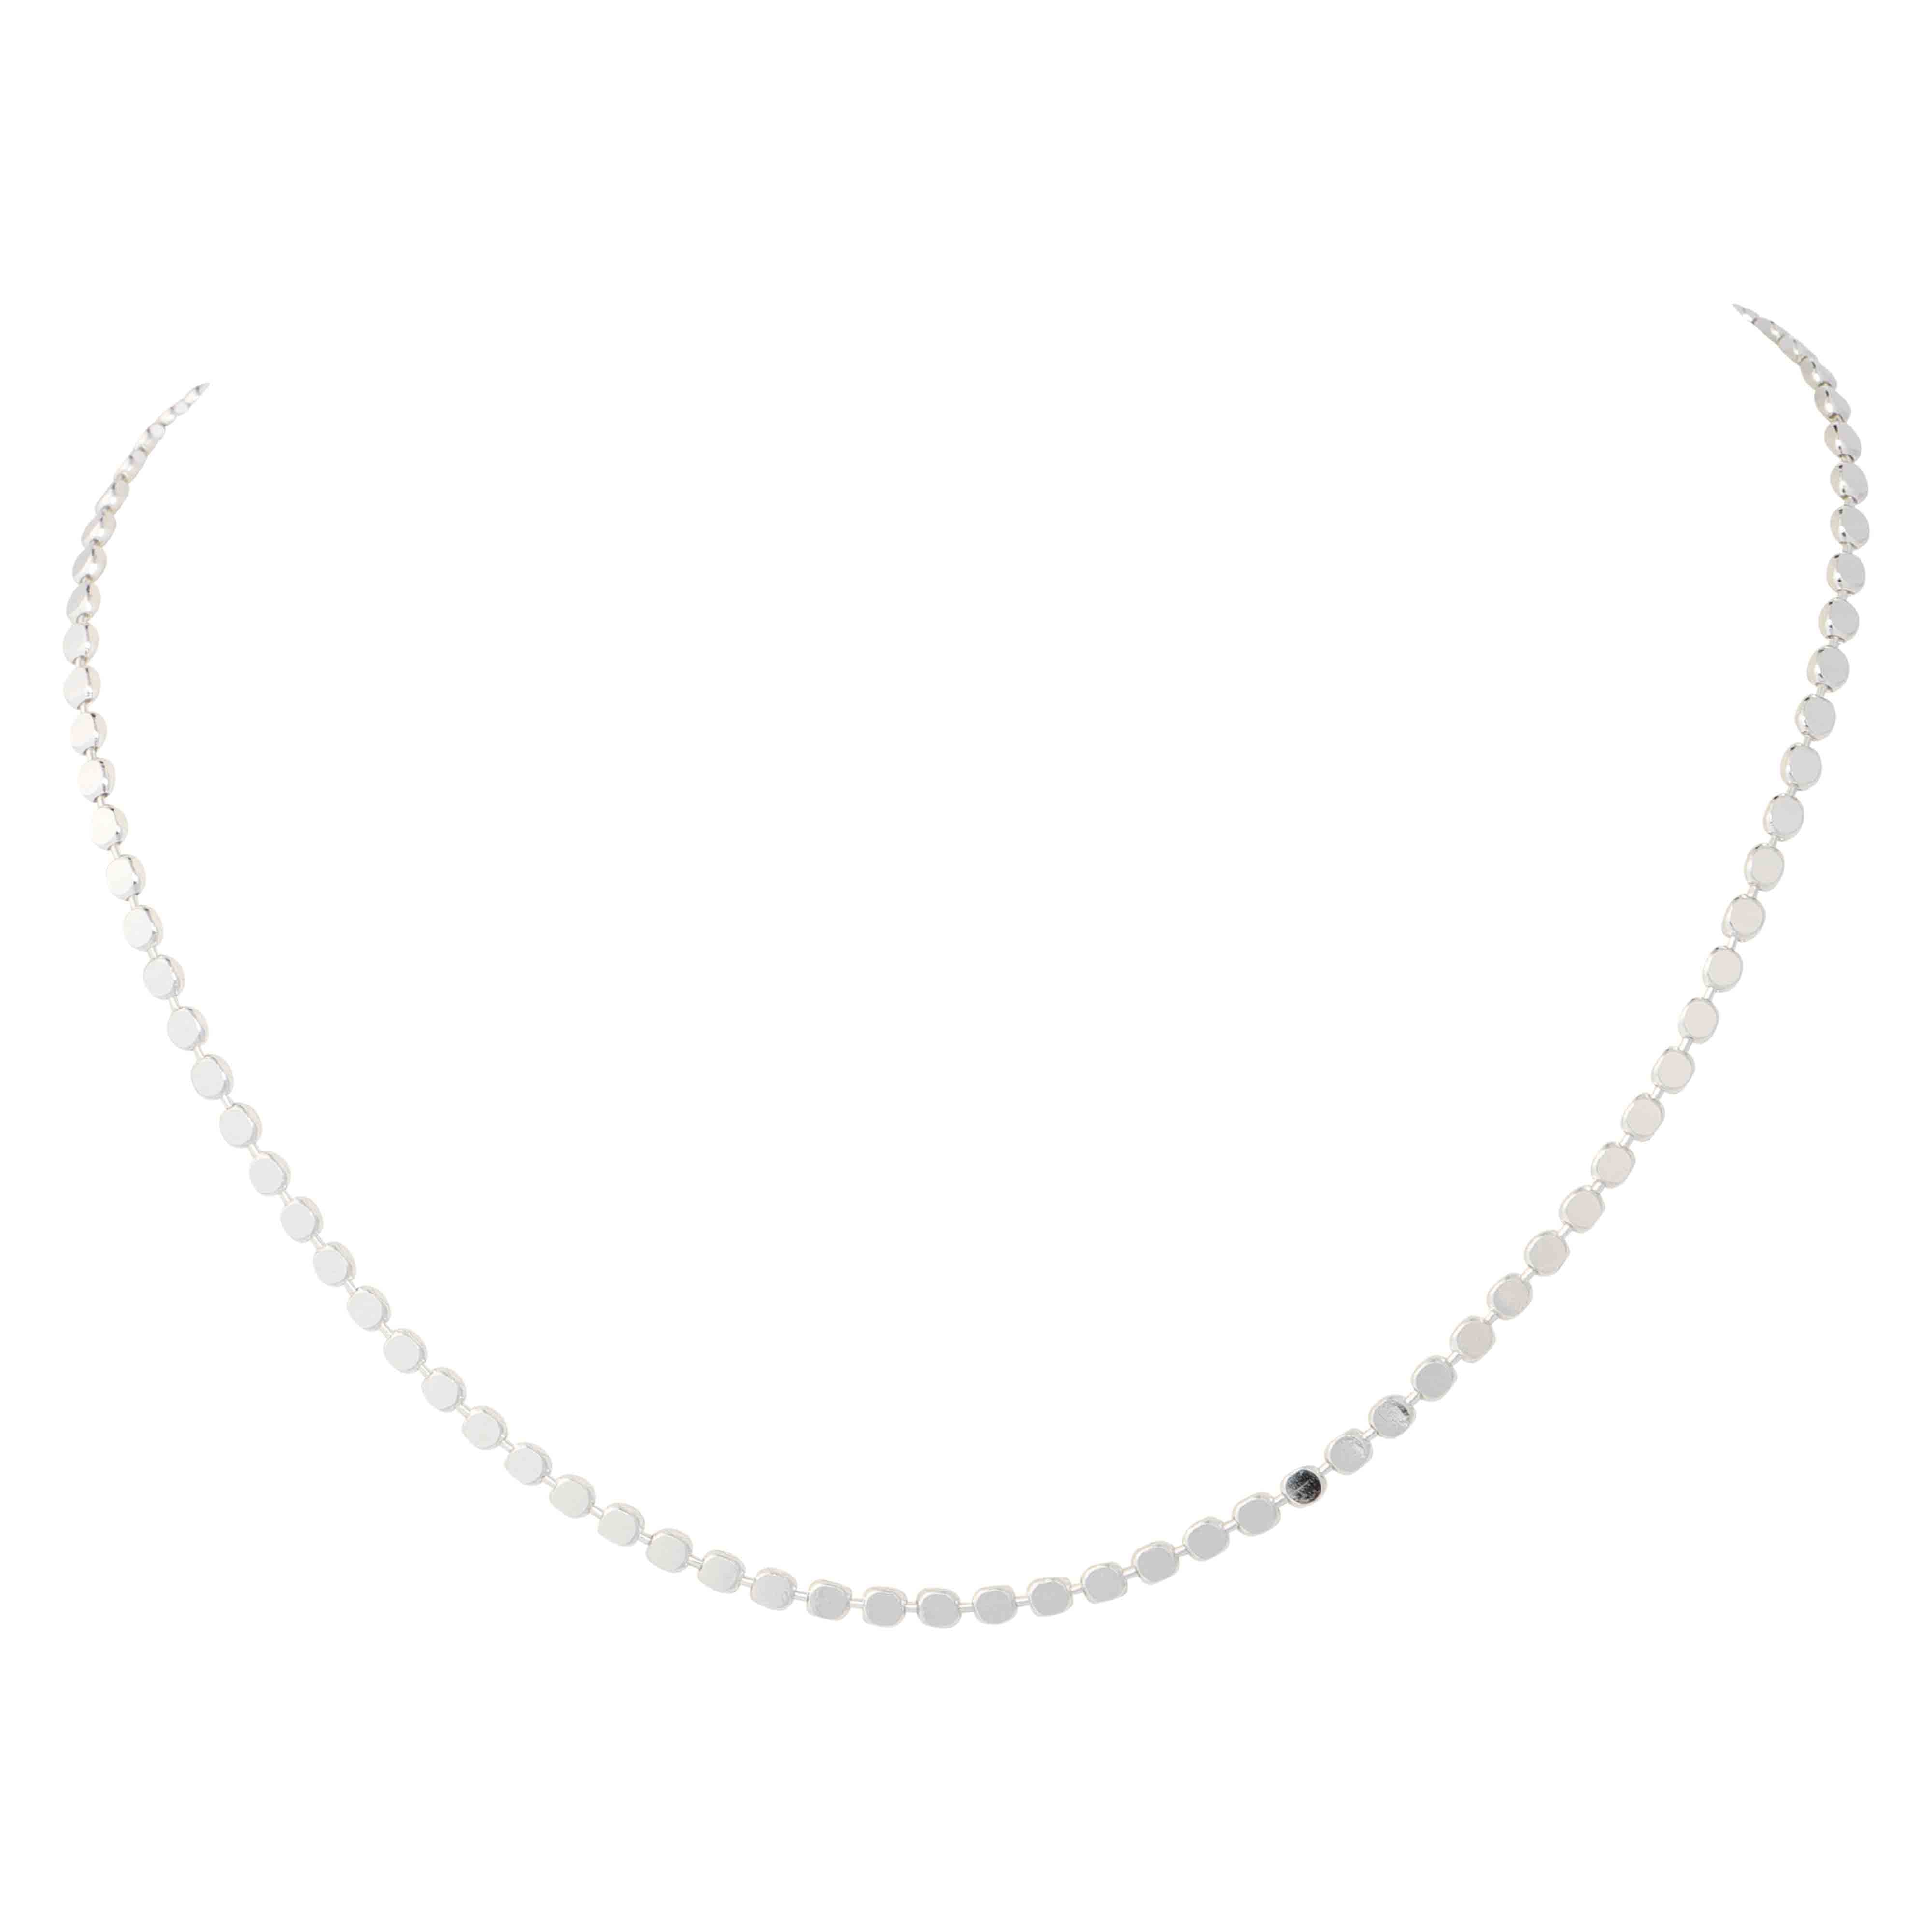 Mya Shiny Silver Necklace